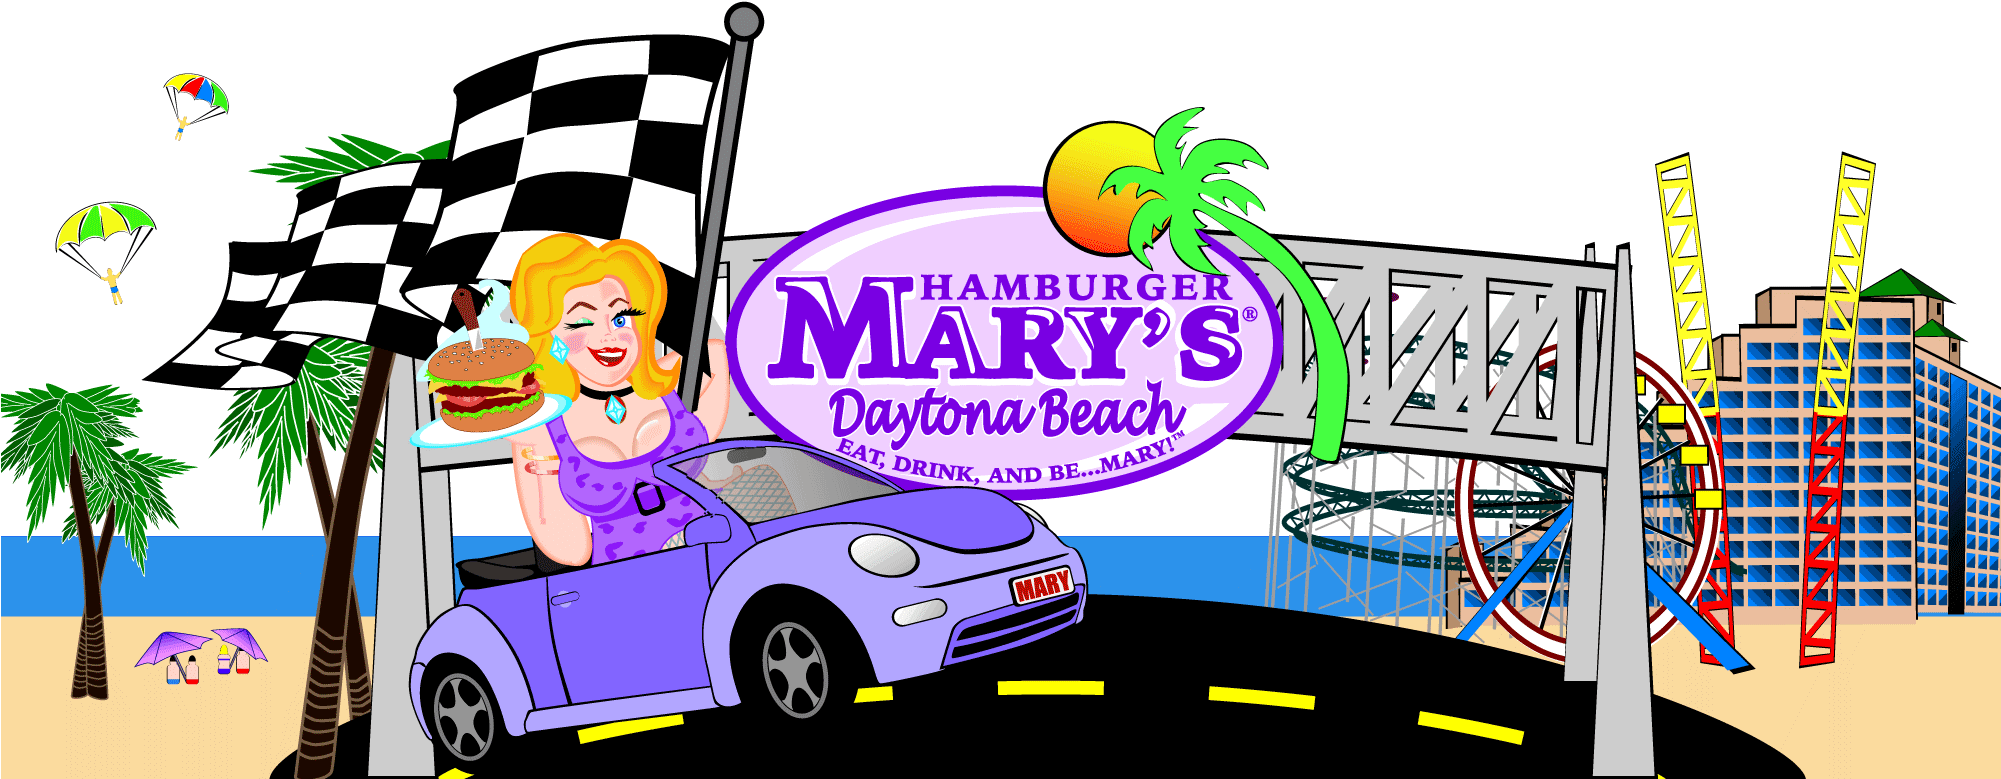 Hamburger Mary's Daytona Beach (2000x900)